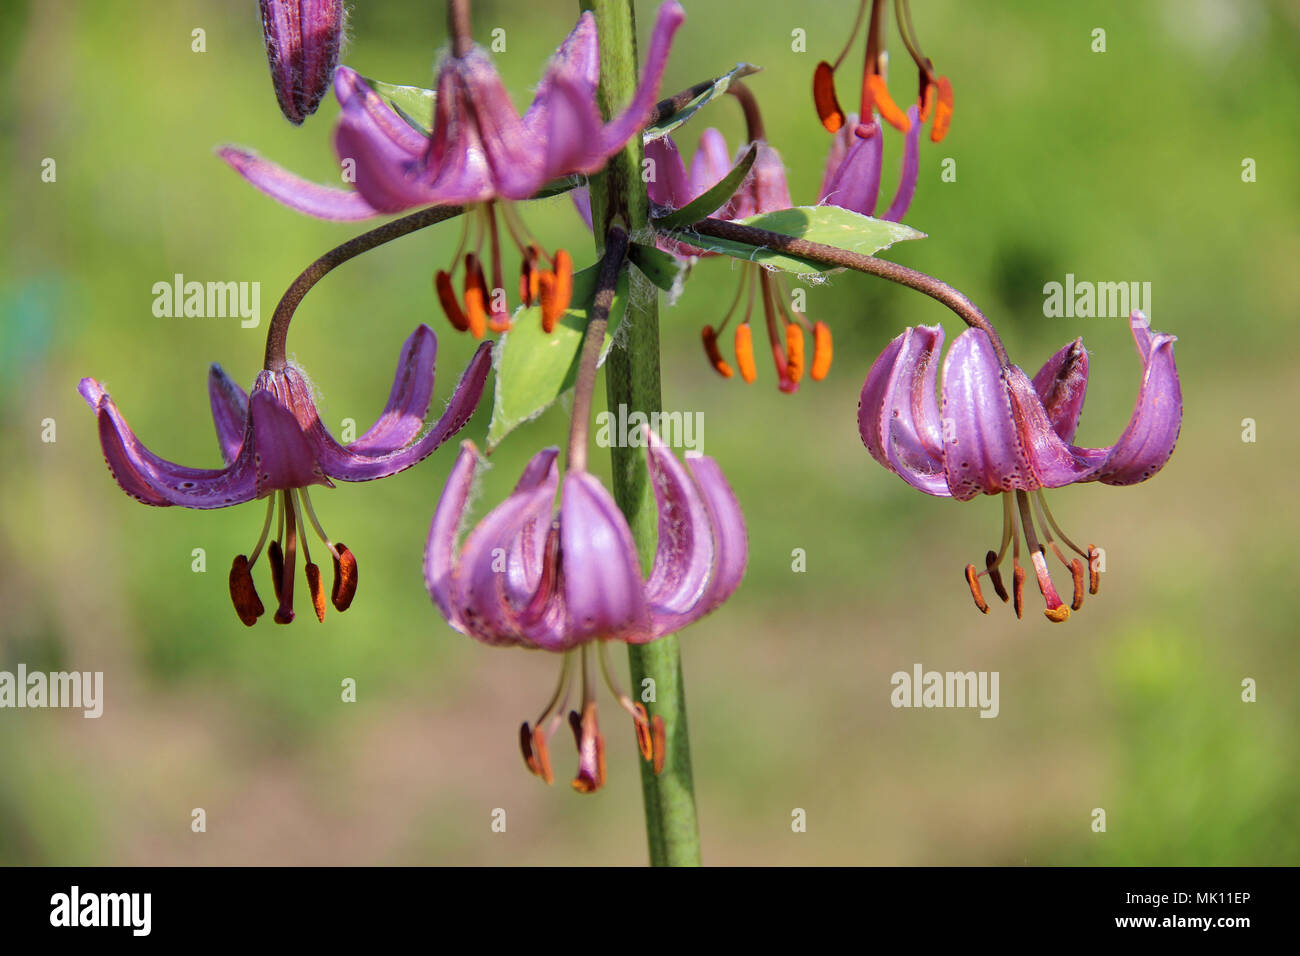 Incredibile fiori viola appeso come una ghirlanda o lampadario sul peduncolo verde Foto Stock